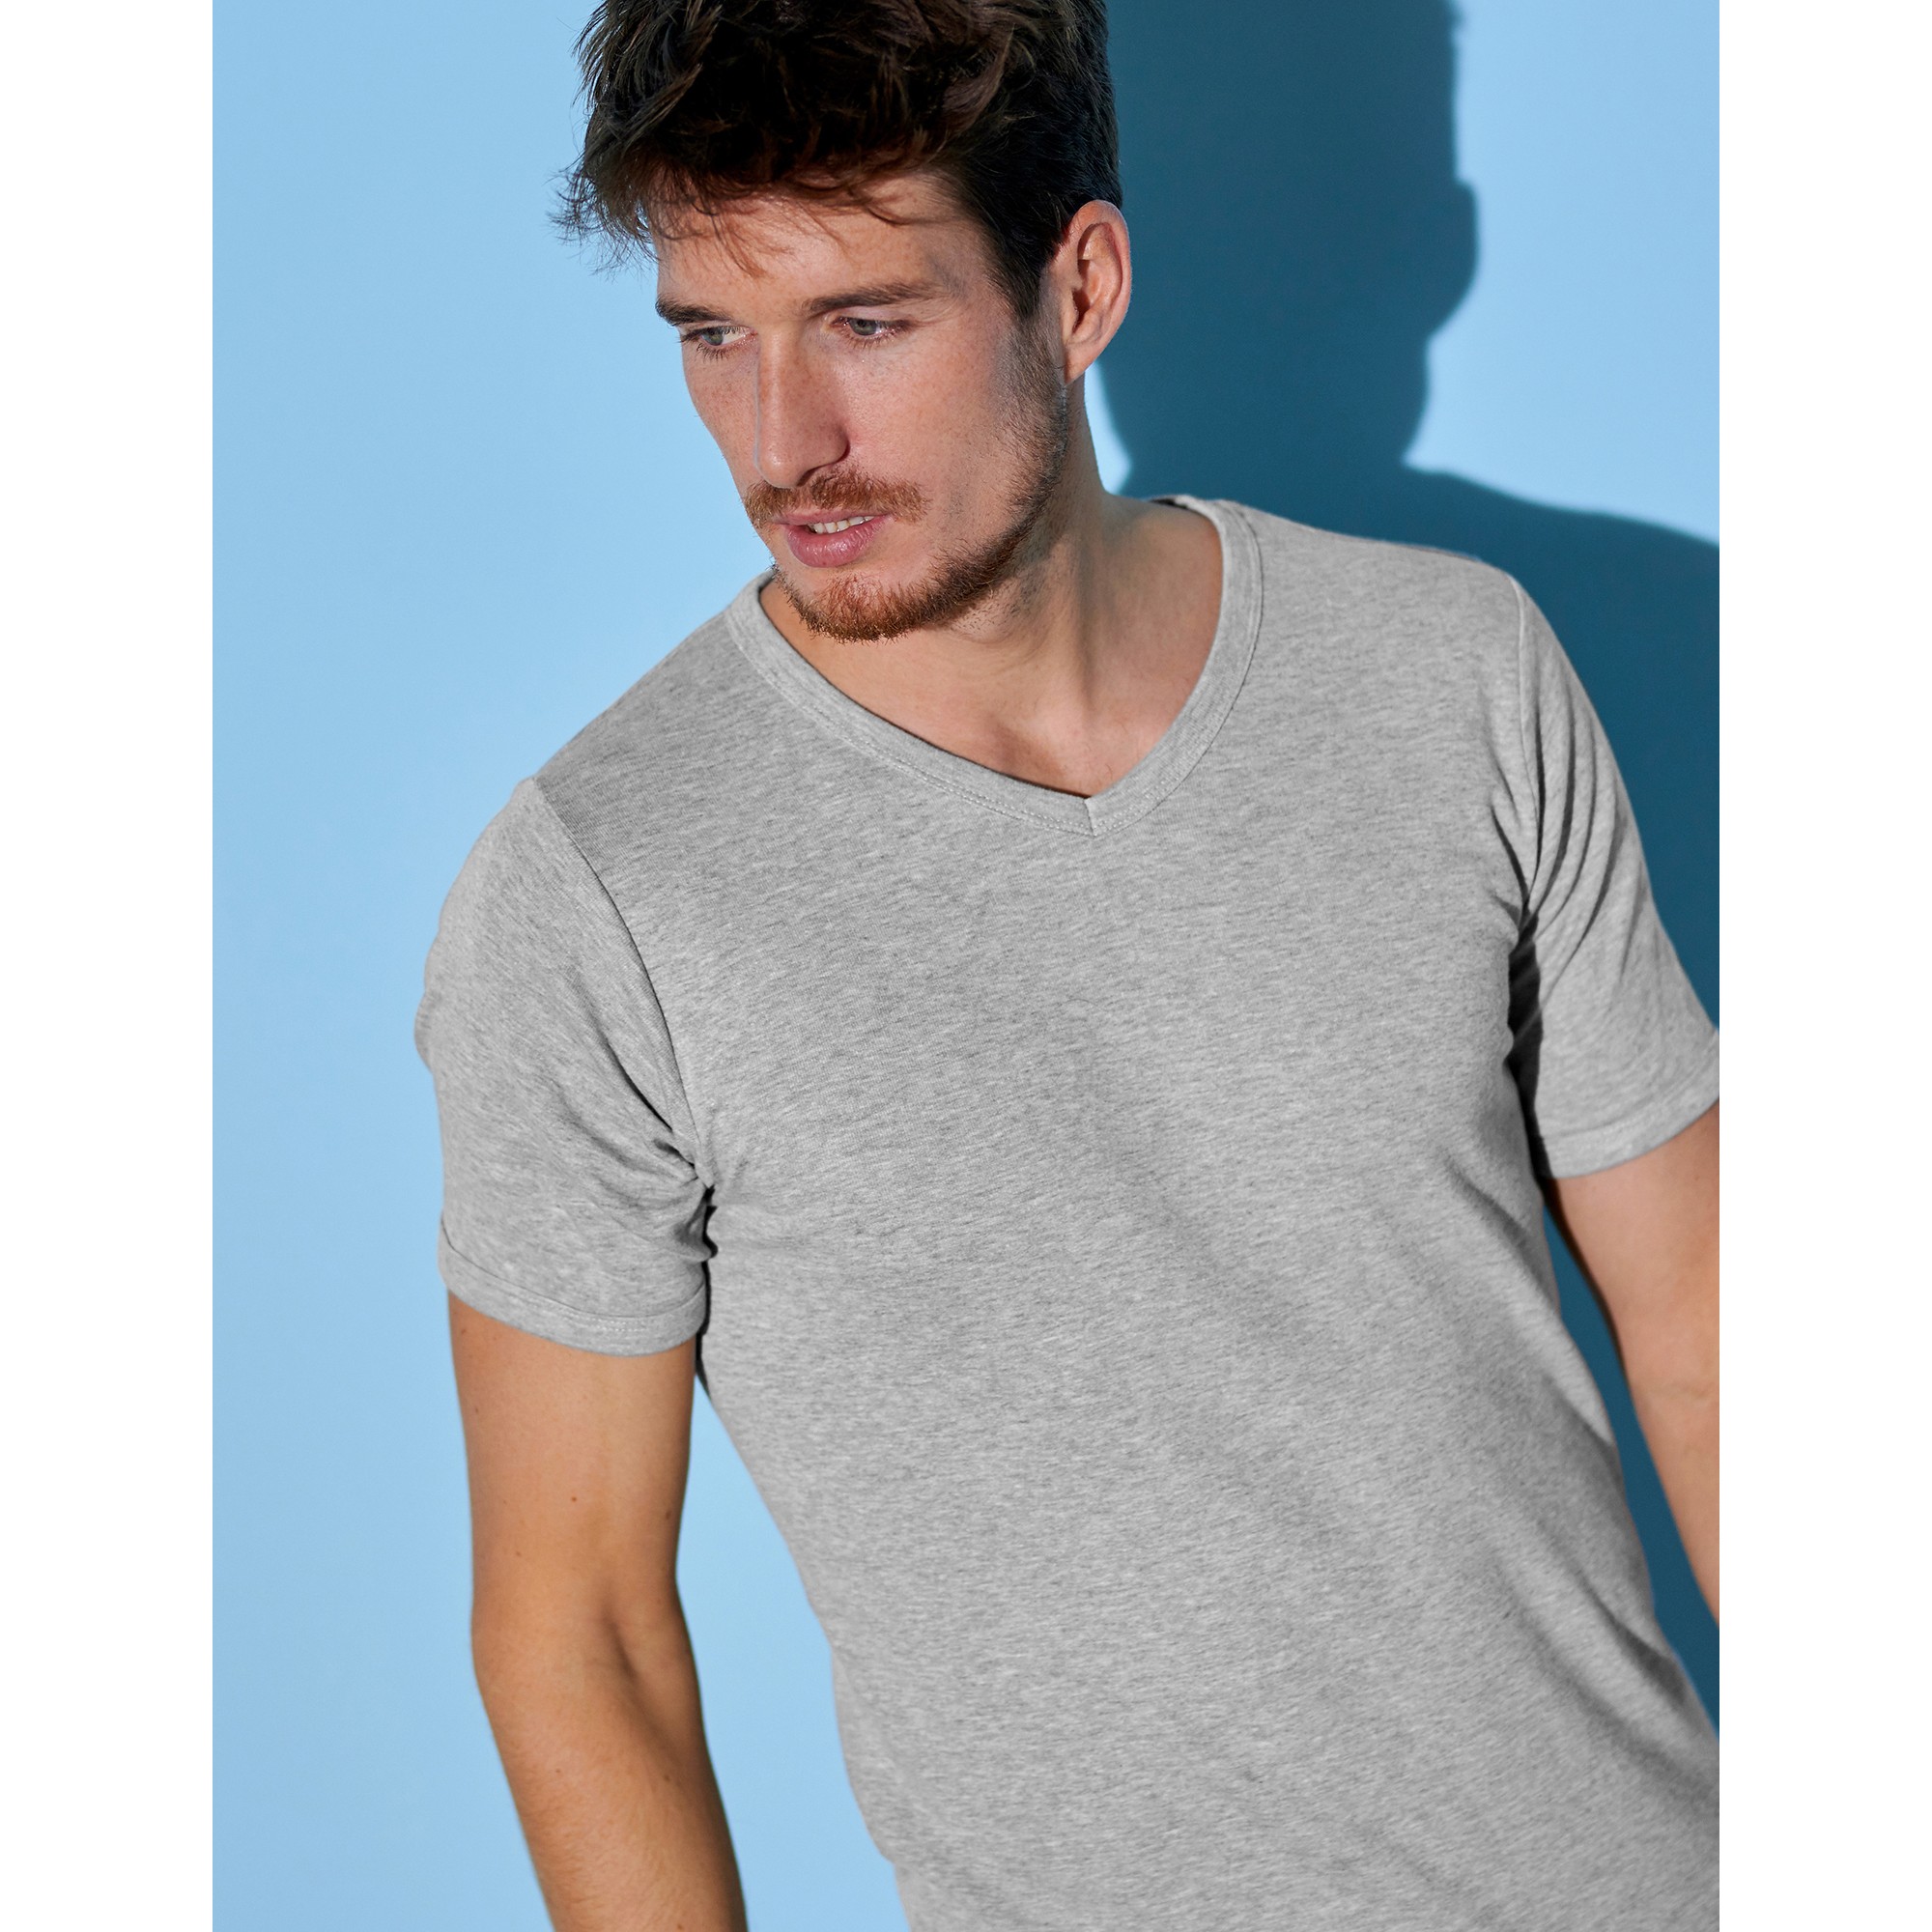 T- shirt Homme thermique marque BP disponible en 5 coloris.